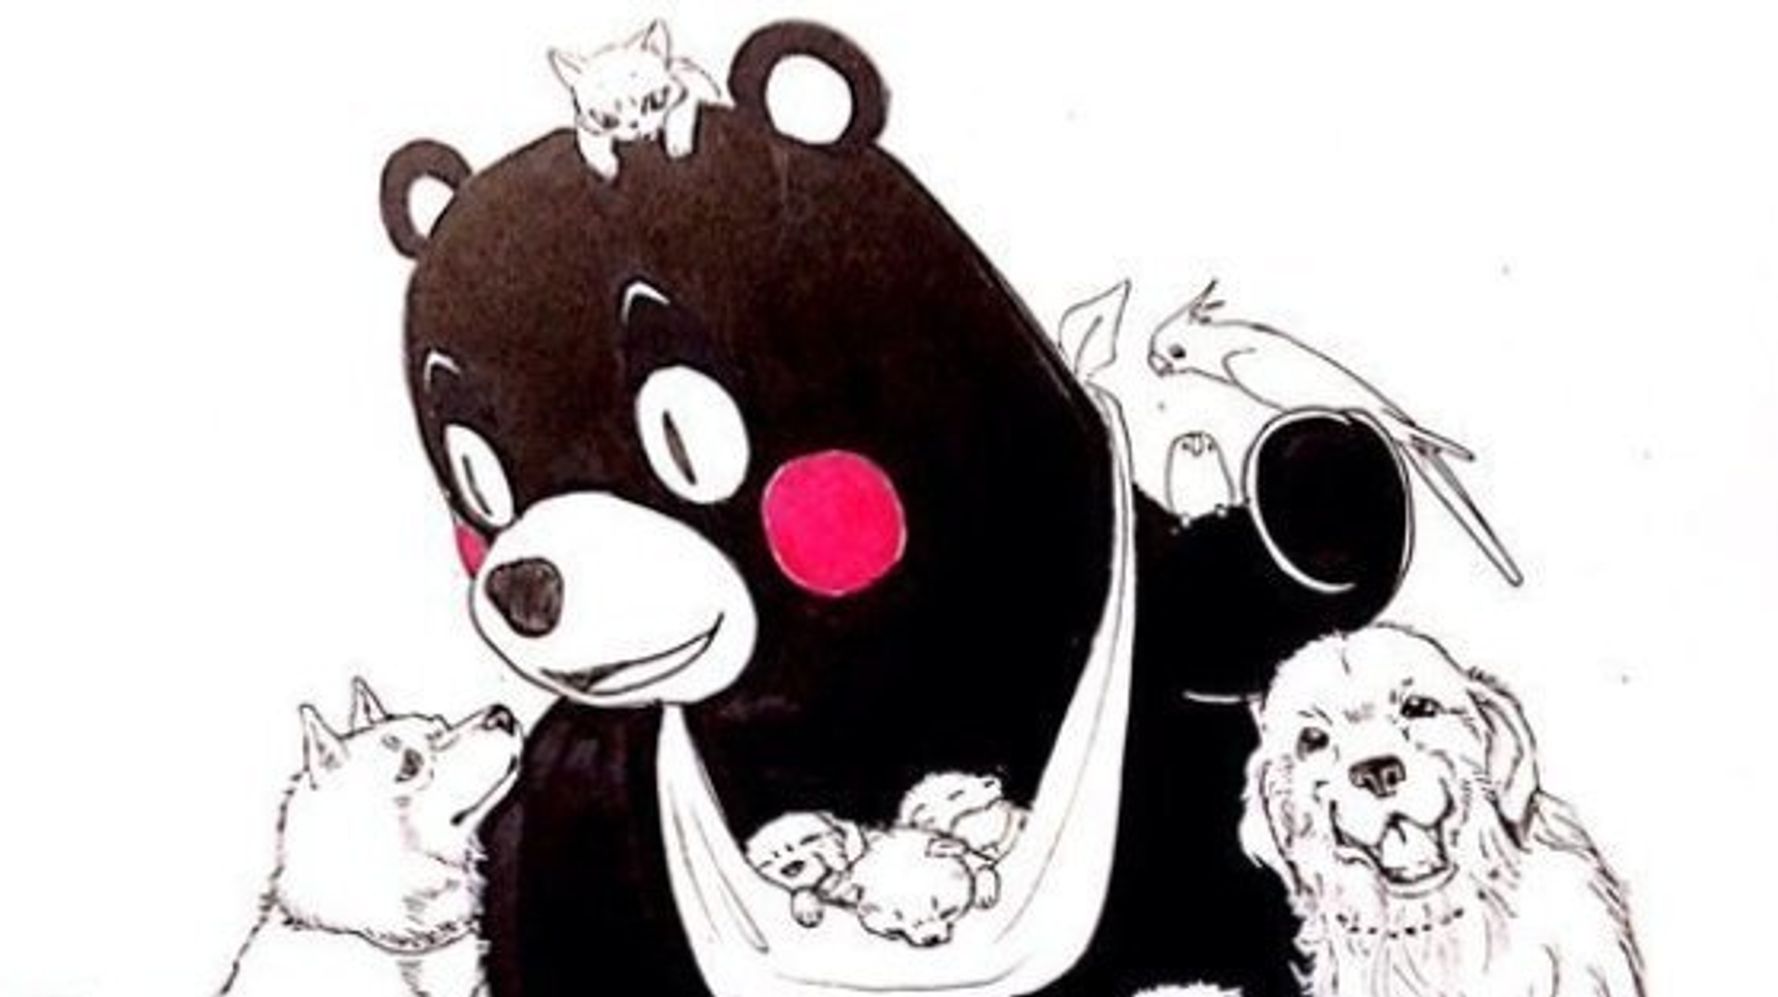 くまモン頑張れ絵 熊本を応援するイラストが続々投稿される 画像集 ハフポスト News